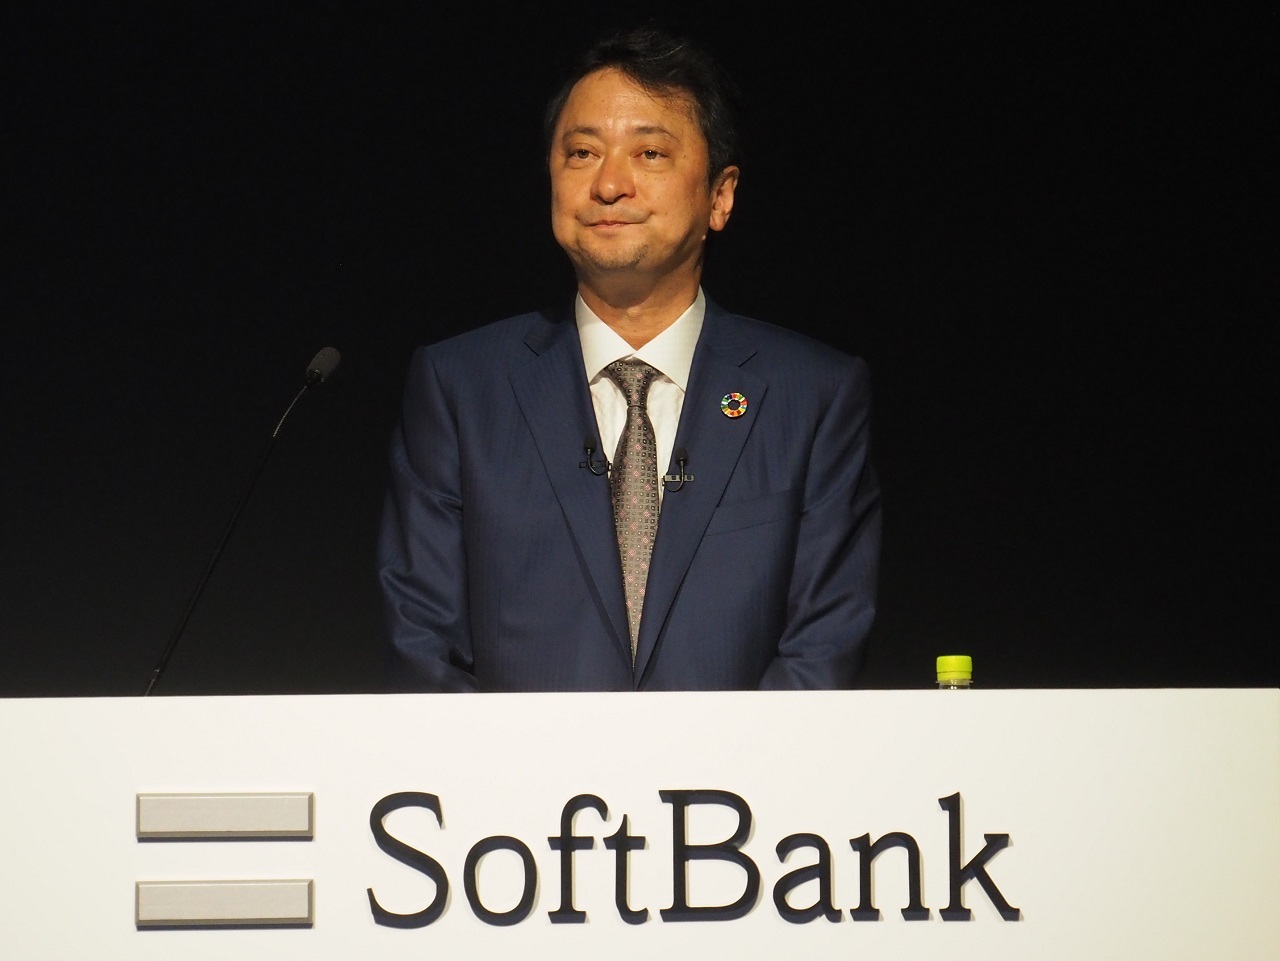 ソフトバンクの宮川氏は料金引き下げの影響が「ピークを迎えてきた」と話している